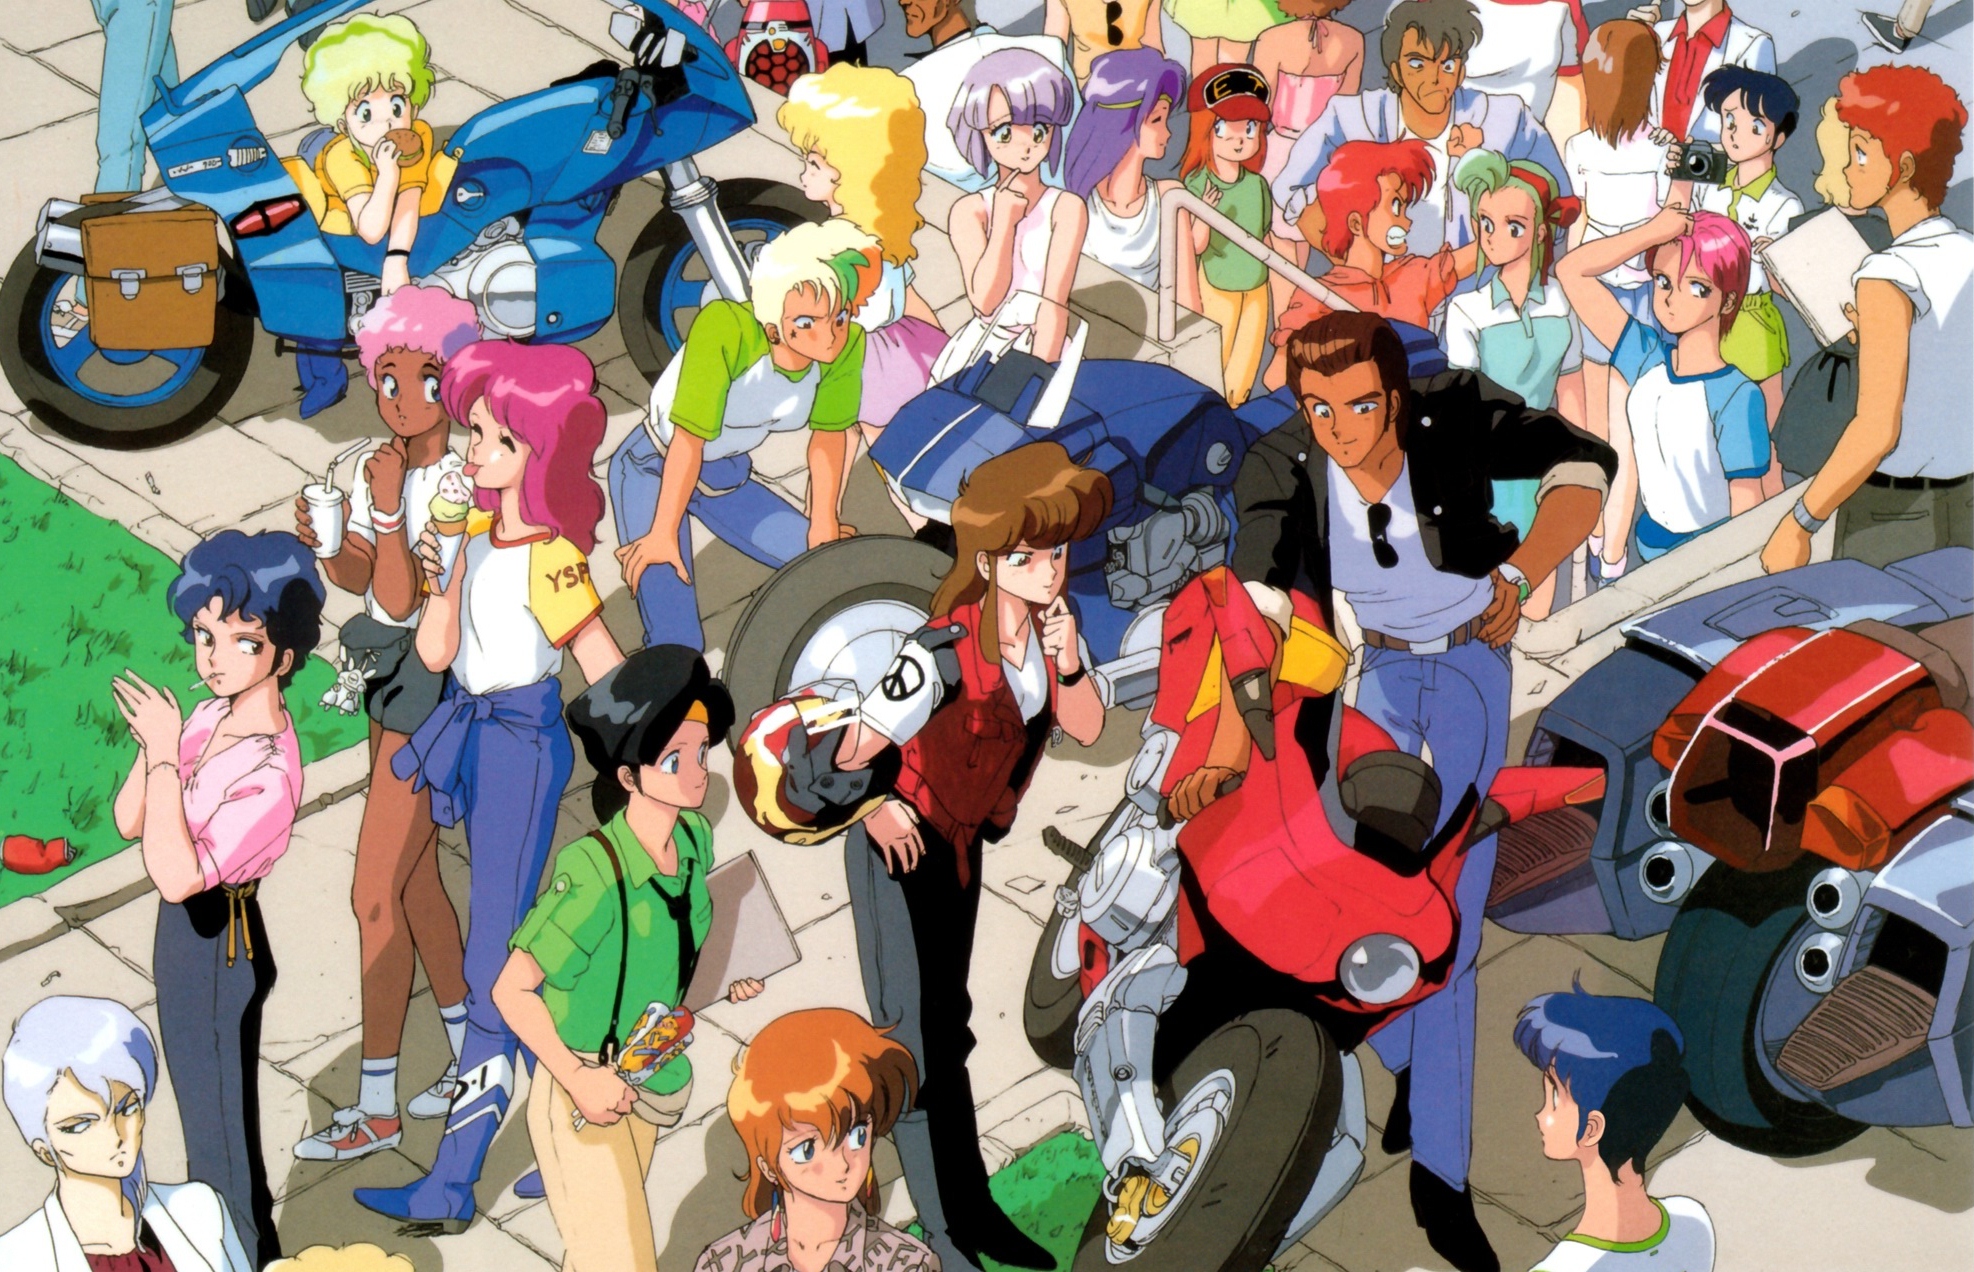 anime collage wallpaper,personas,grupo social,dibujos animados,comunidad,multitud